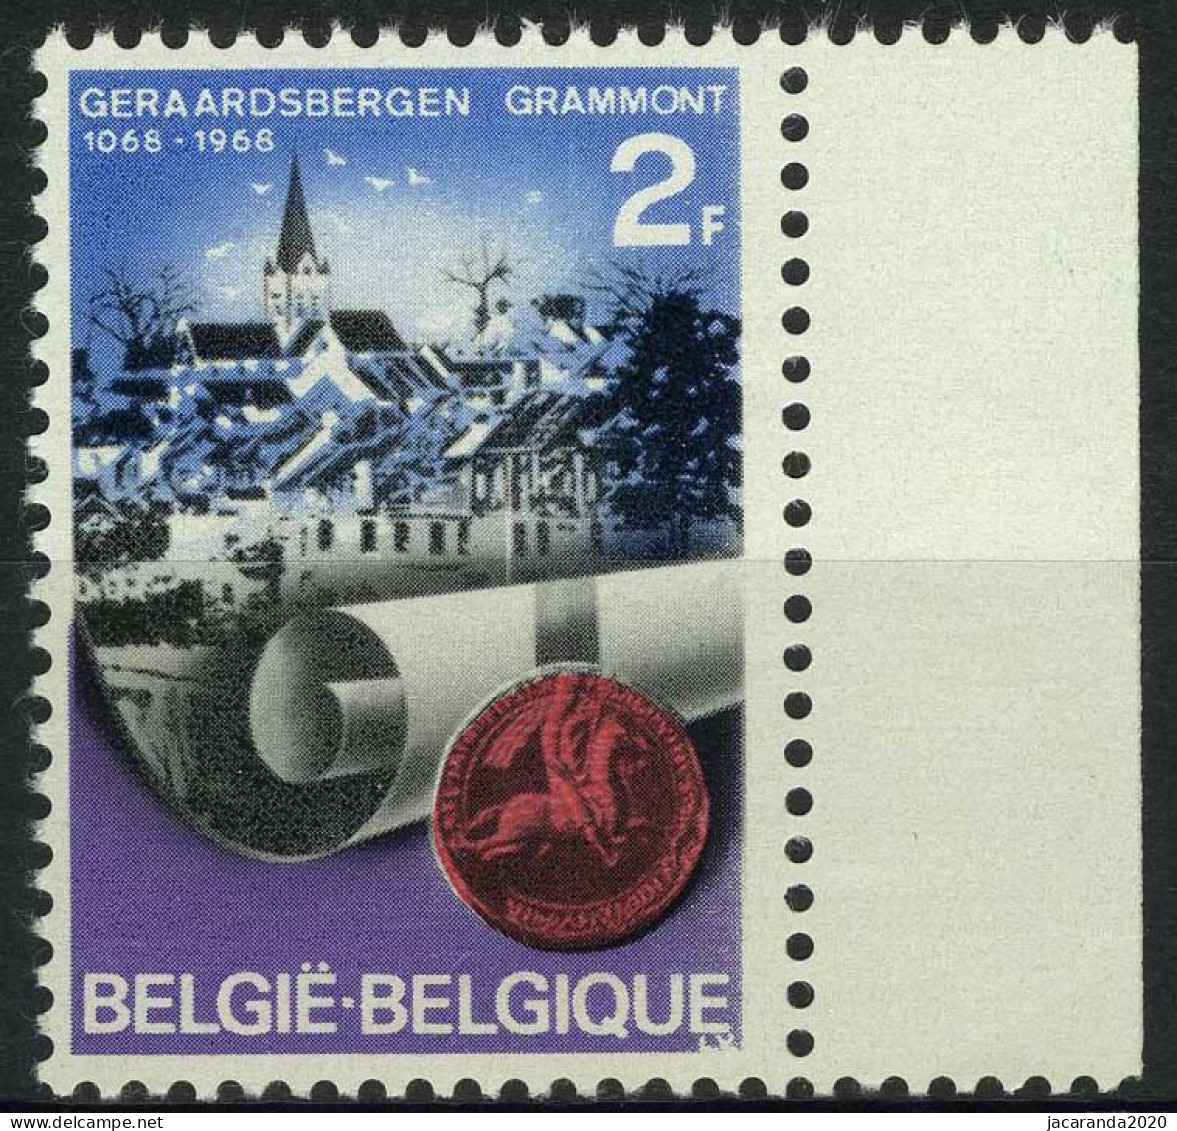 België 1448 ** - Witte Vlek Naast Cijfer 2 - Tache Blanche à Cote Du Chiffre 2 - 1961-1990